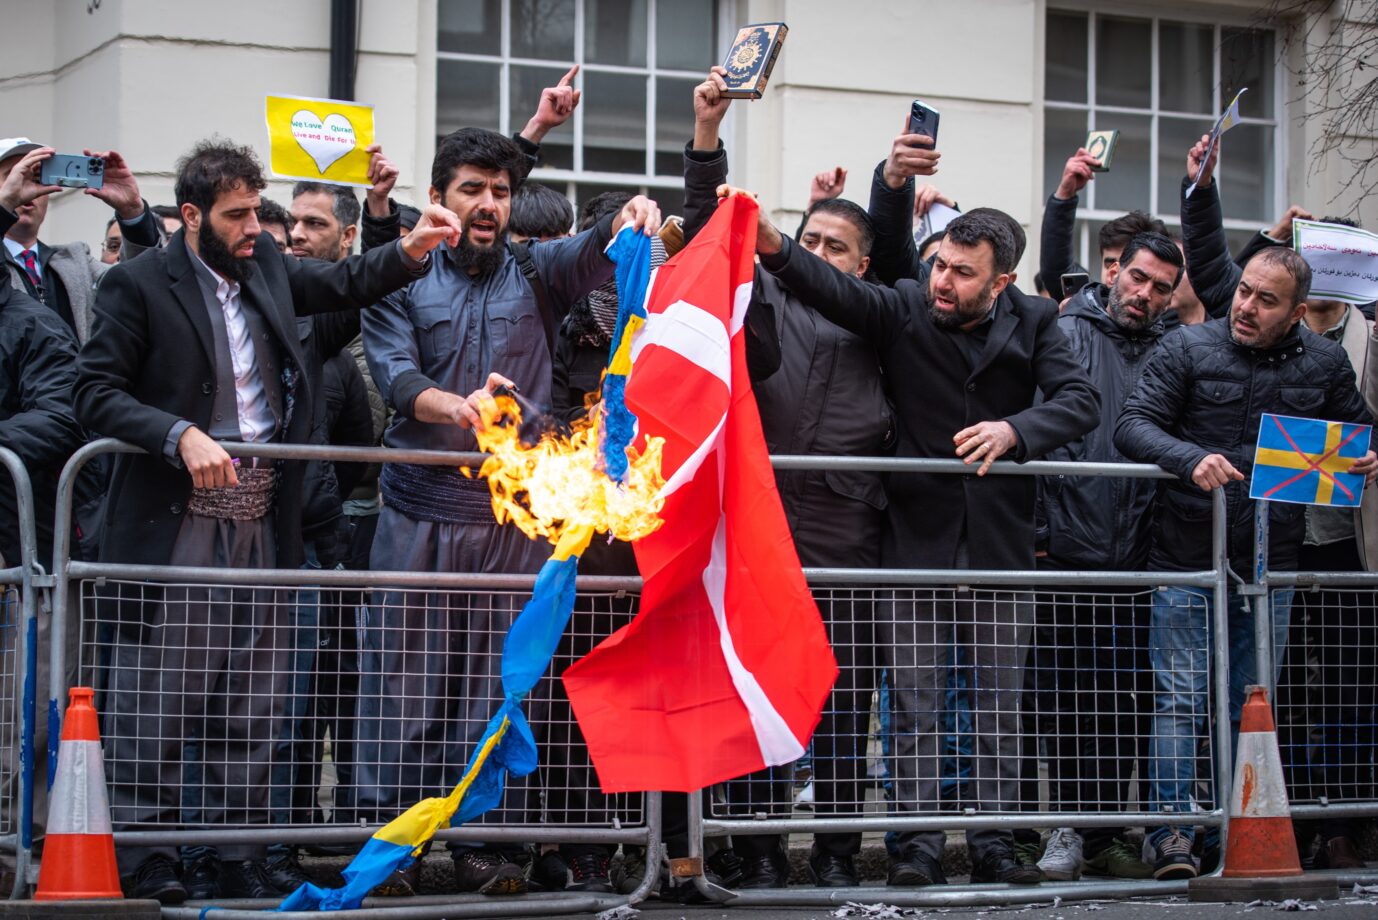 Dänemark will womöglich in Zukunft gegen Koranverbrennungen vorgehen – eine Reaktion auf teils gewalttätige Proteste? Foto: picture alliance / ZUMAPRESS.com | Loredana Sangiuliano